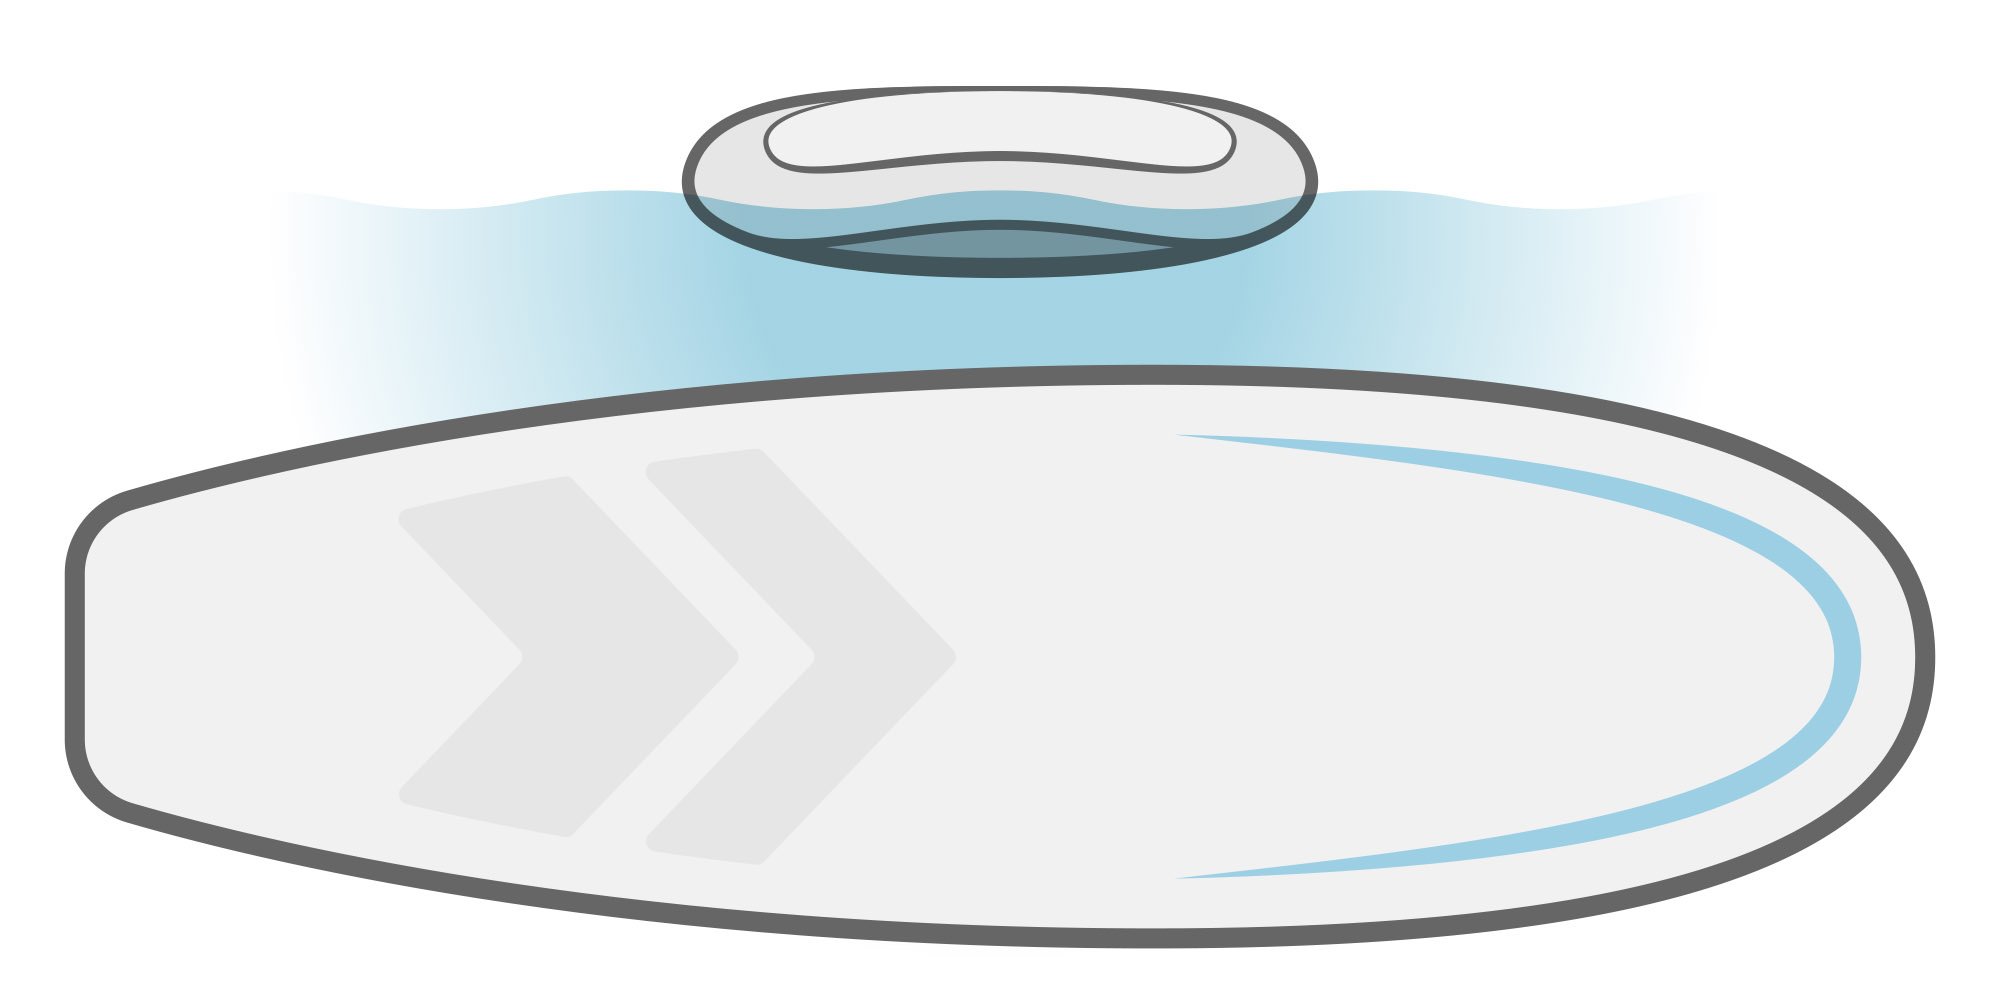 Ilustrácia SUP paddleboardu s oblým trupom. 